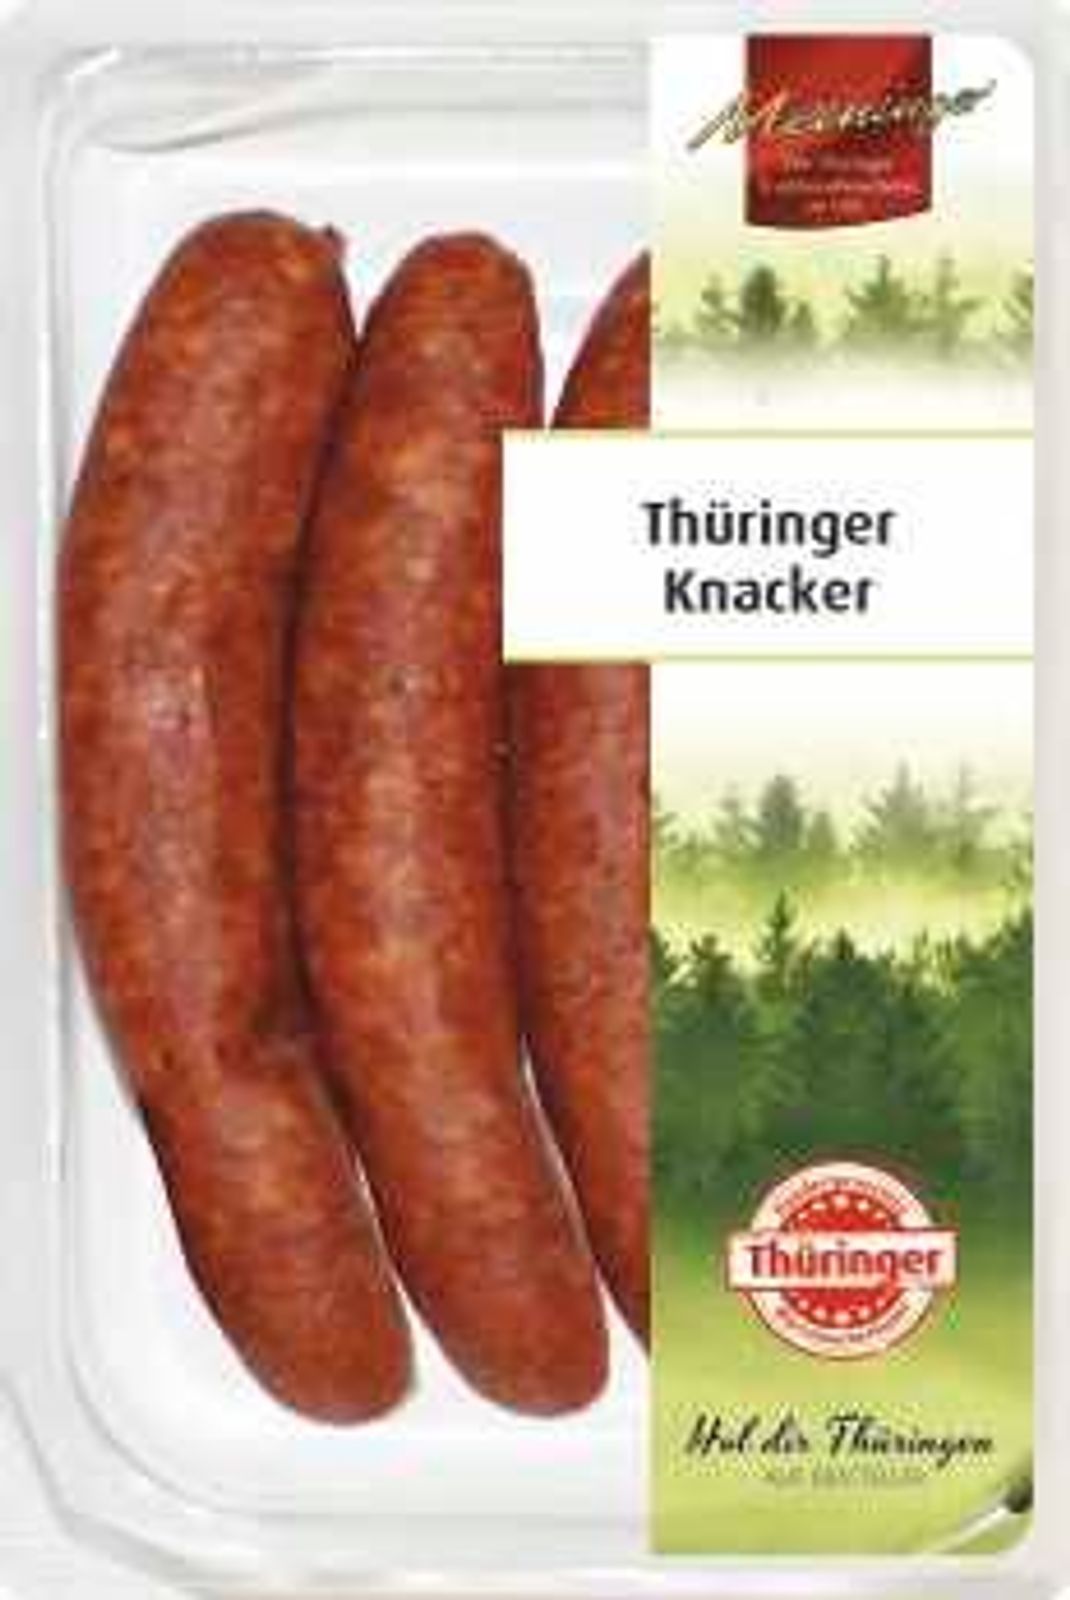 Der Wursthersteller Meininger Wurstspezialitäten aus Thüringen GmbH ruft seine "Thüringer Knacker" zurück.